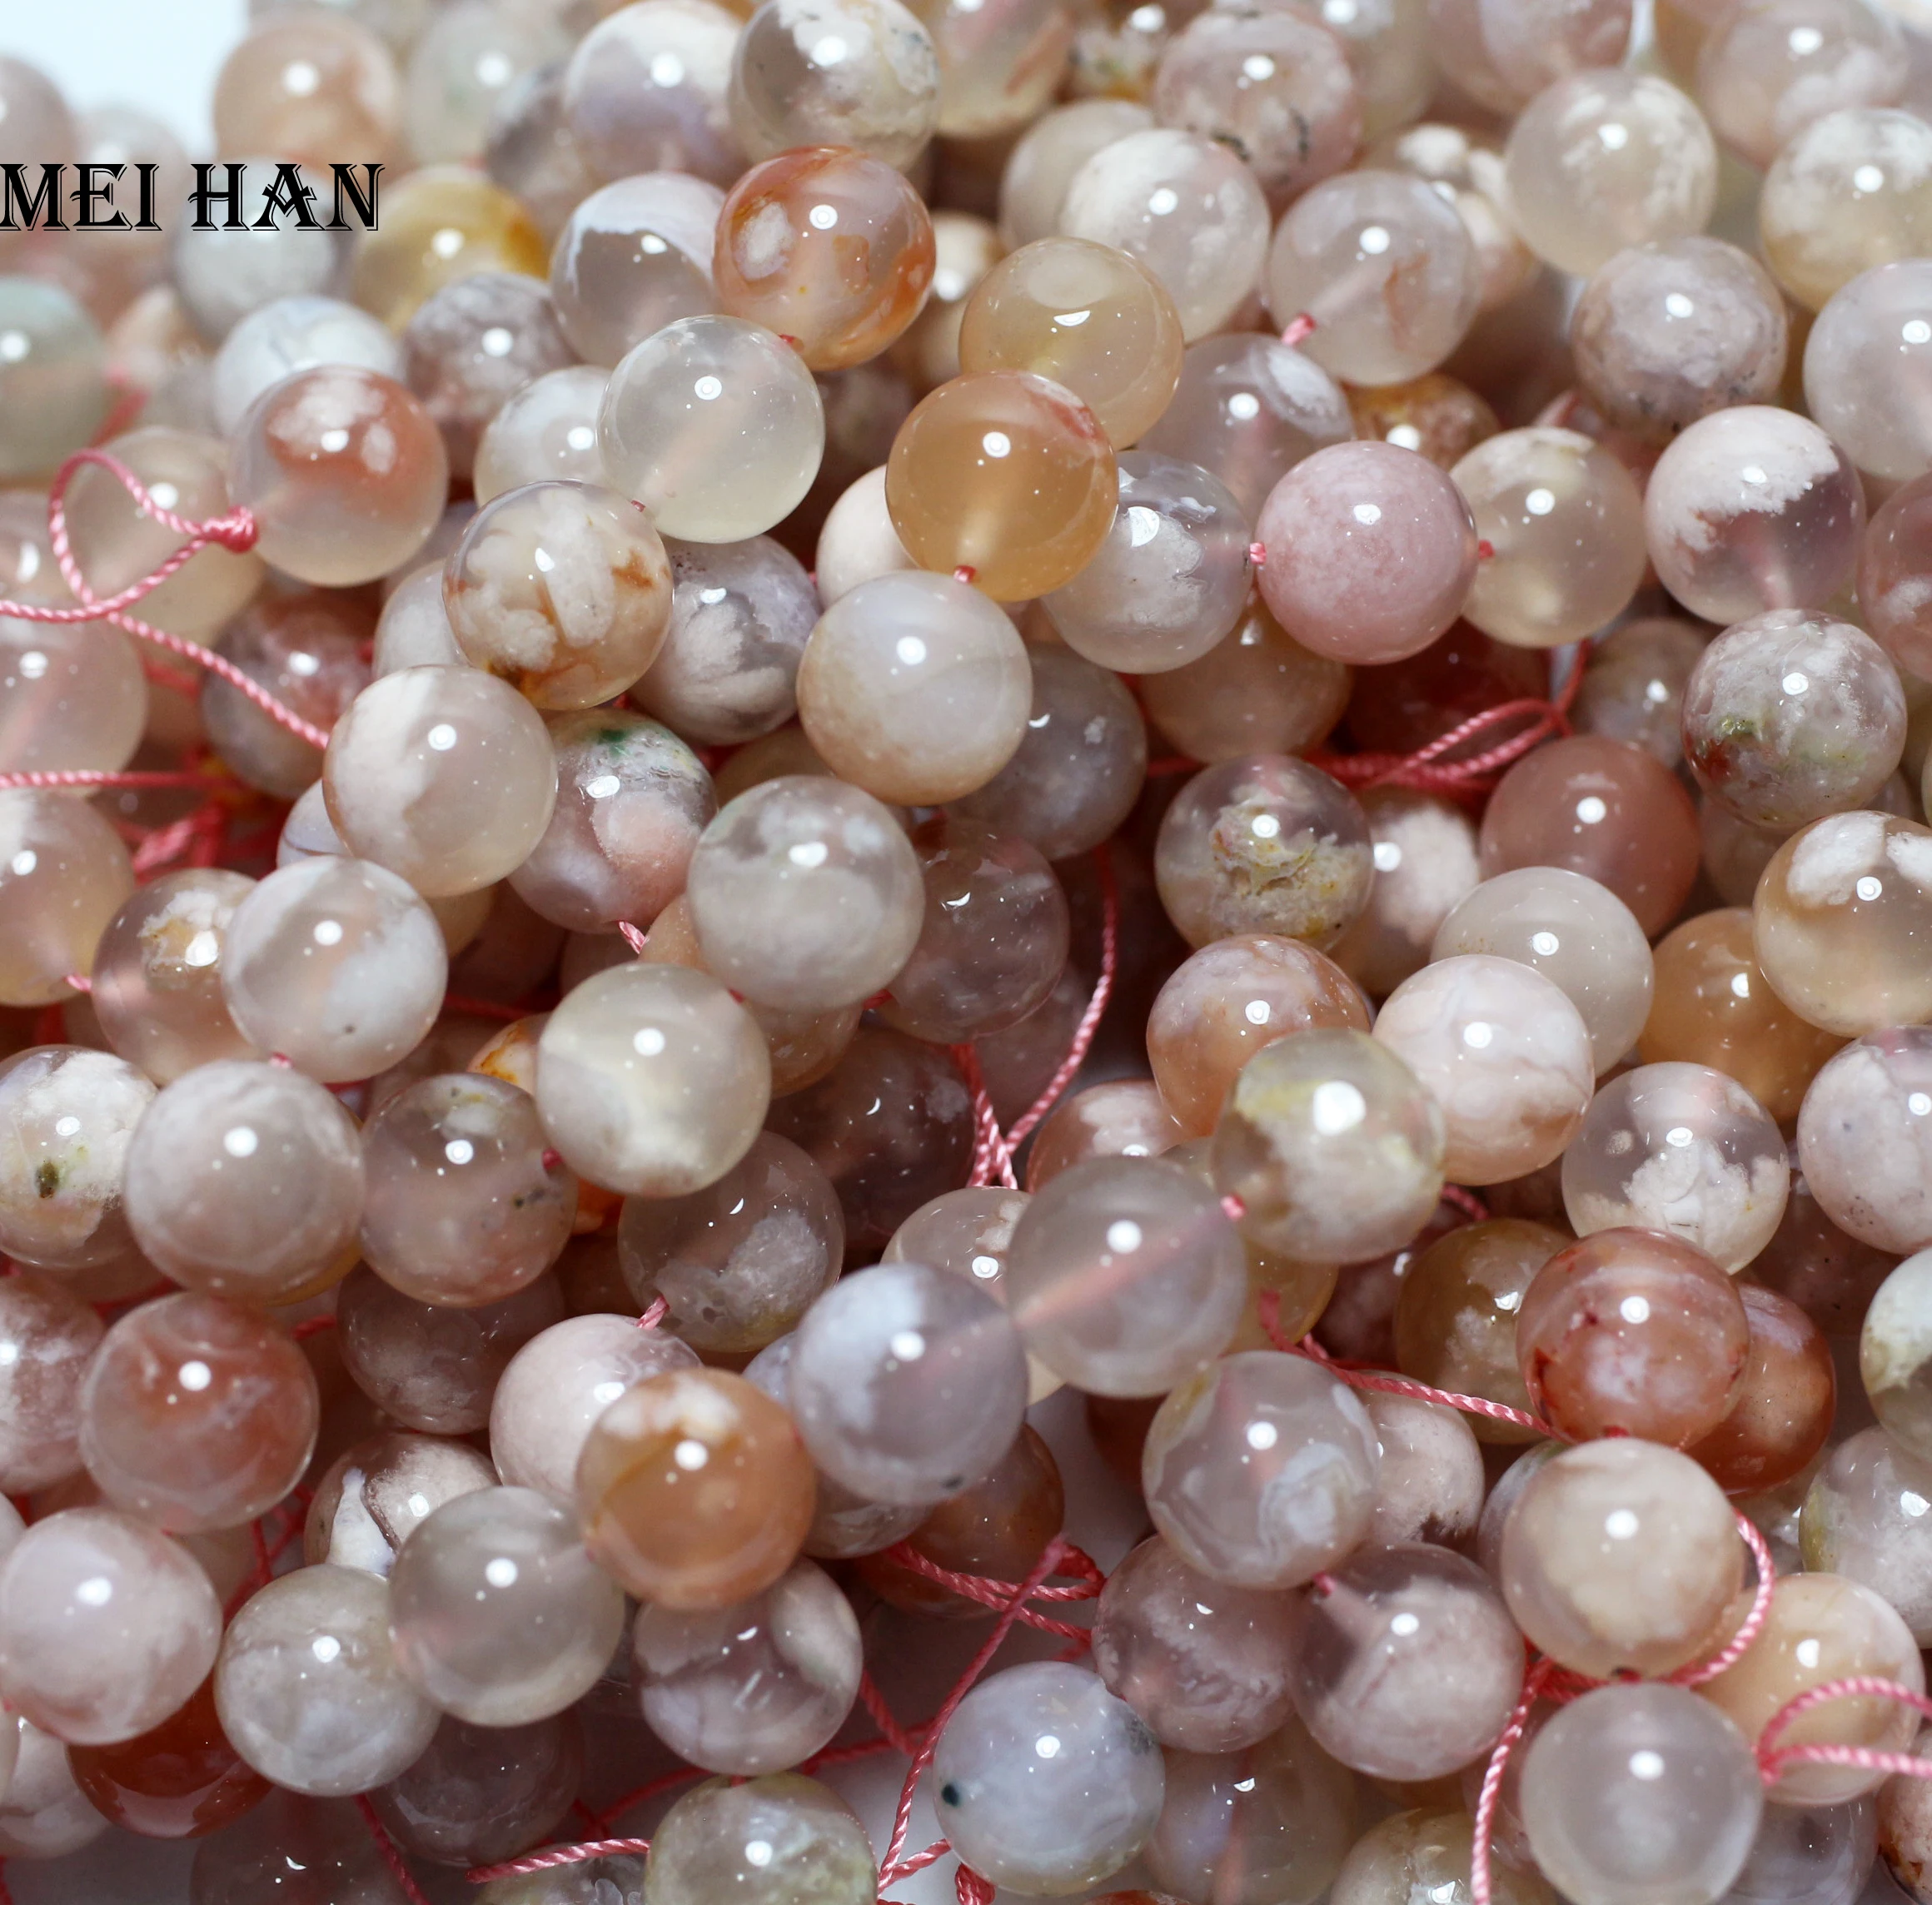 

Meihan 10 мм Природный Сакура цветение вишни Агат Круглые свободные бусины драгоценный камень для изготовления ювелирных изделий дизайн